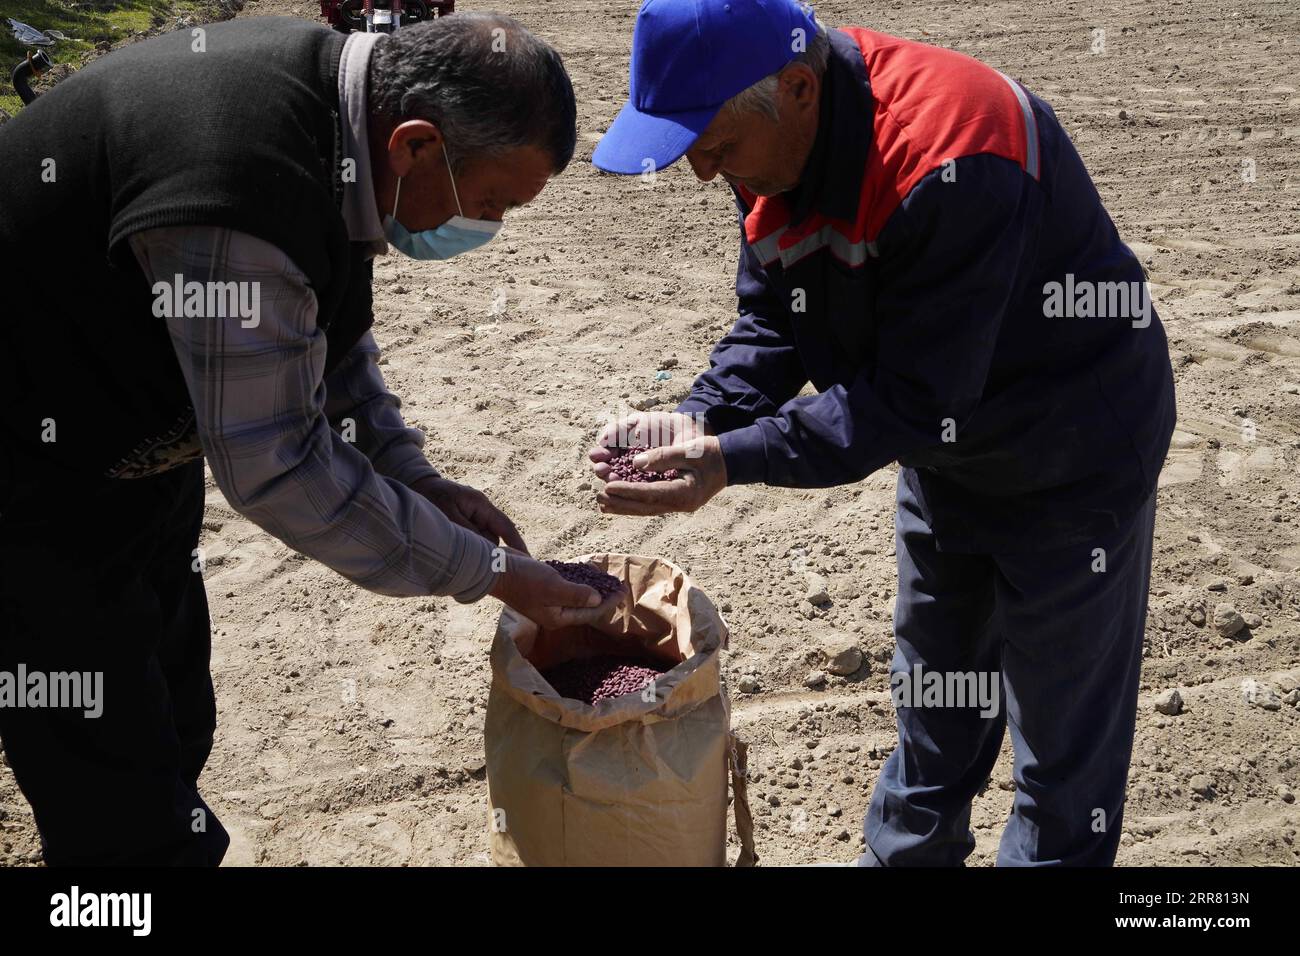 210411 -- FERGANA, 11 aprile 2021 -- Un tecnico introduce semi di cotone a un agricoltore nella regione di Fergana, Uzbekistan, 9 aprile 2021. Foto di /Xinhua UZBEKISTAN-FERGANA-COTTON-FARMING ZafarxKhalilov PUBLICATIONxNOTxINxCHN Foto Stock